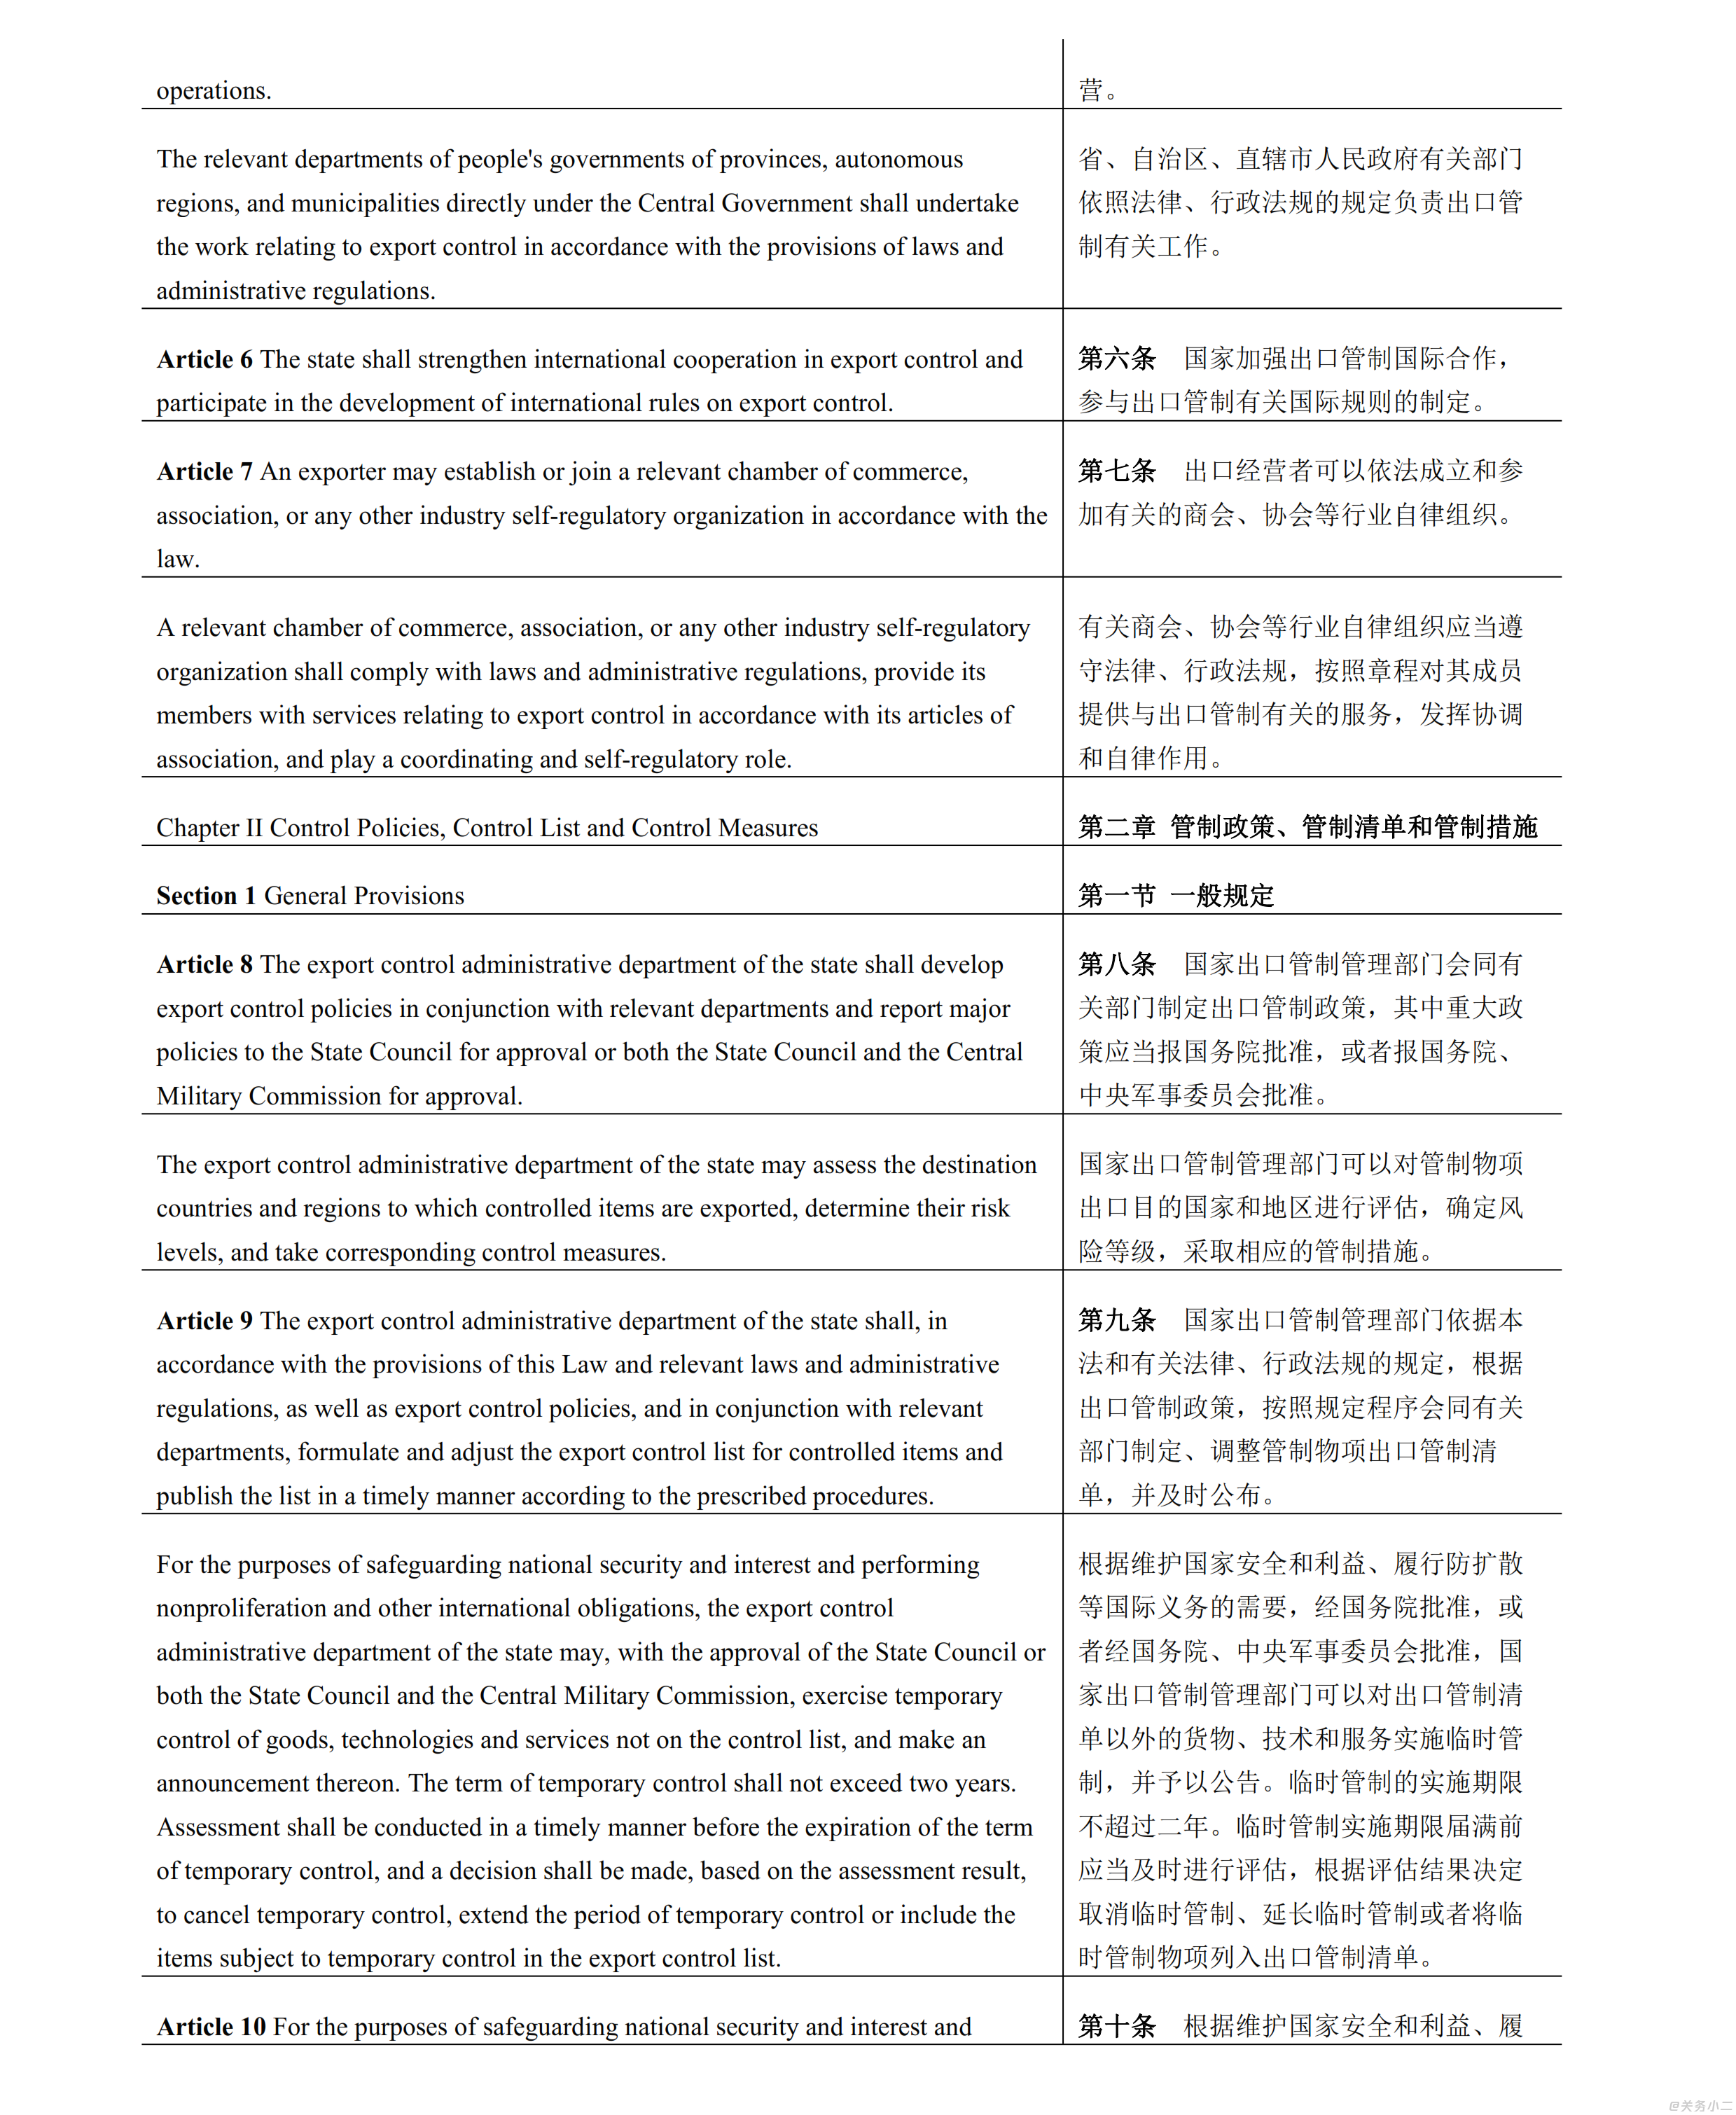 【无页眉】中华人民共和国出口管制法_003.png